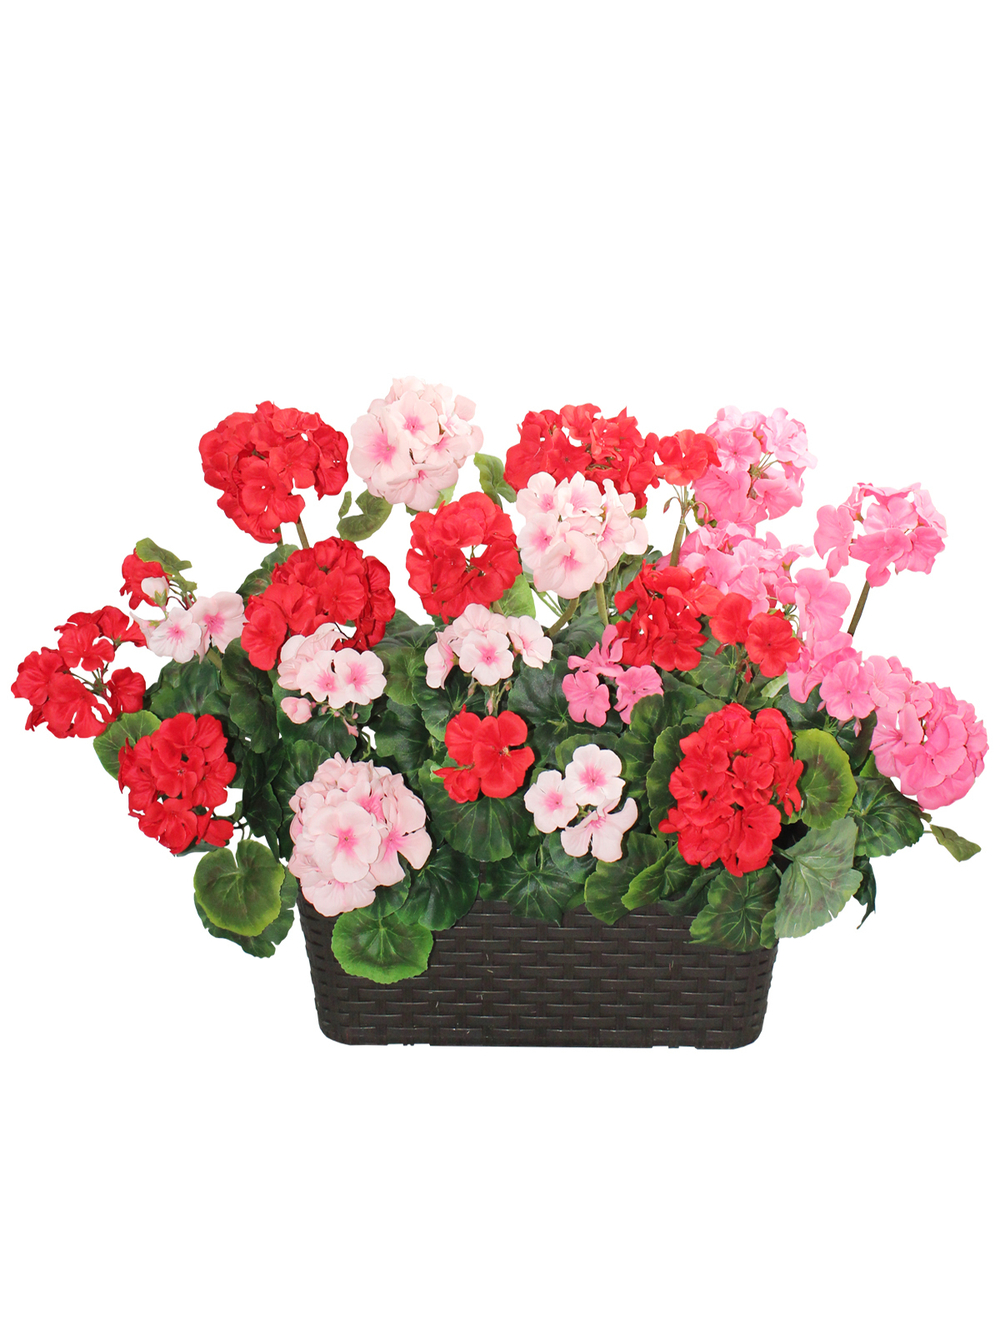 Искусственные цветы Балконный ящик с красно-розовыми геранями 60см